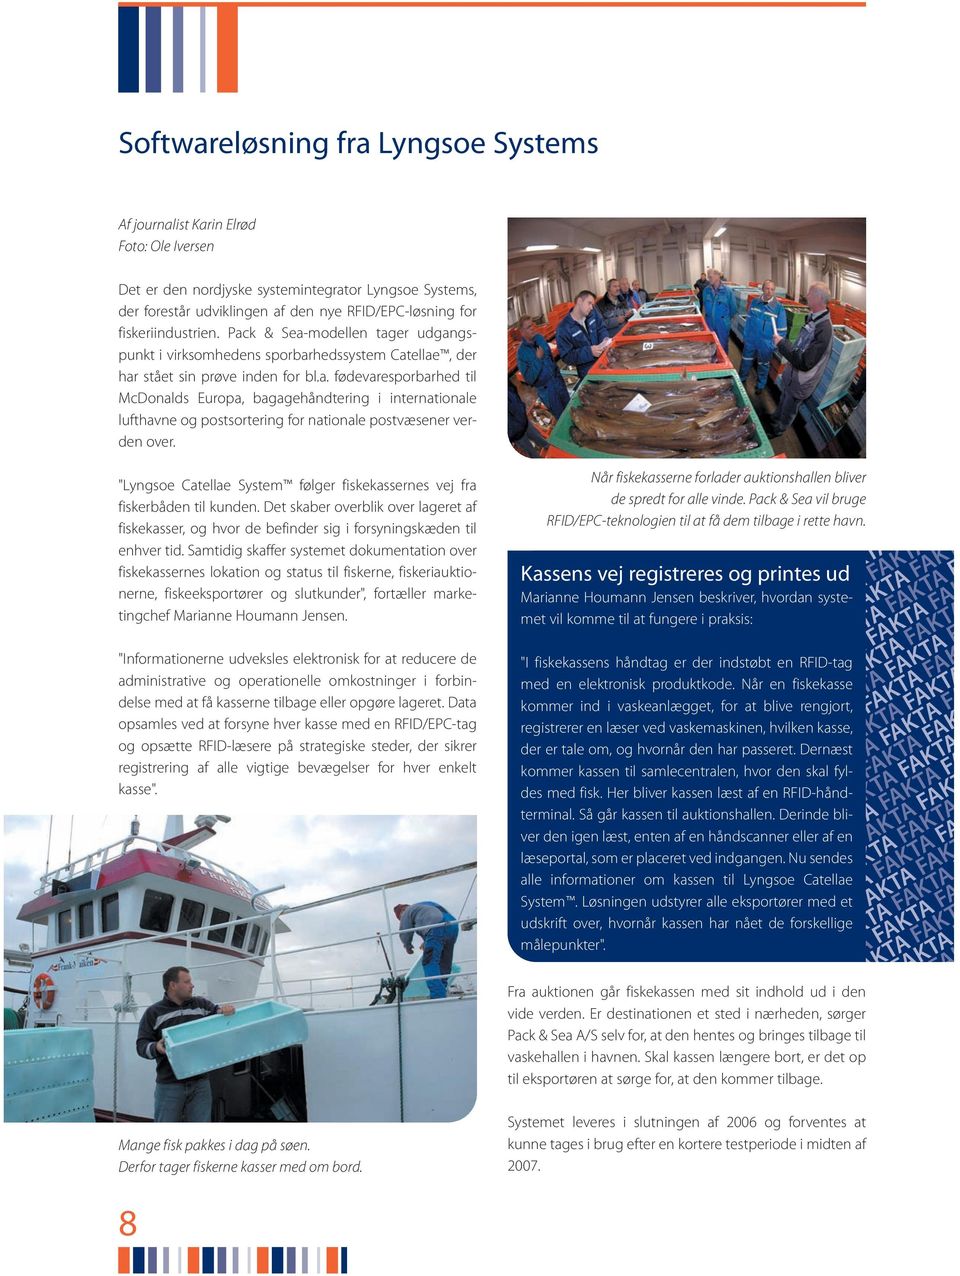 "Lyngsoe Catellae System følger fiskekassernes vej fra fiskerbåden til kunden. Det skaber overblik over lageret af fiskekasser, og hvor de befinder sig i forsyningskæden til enhver tid.